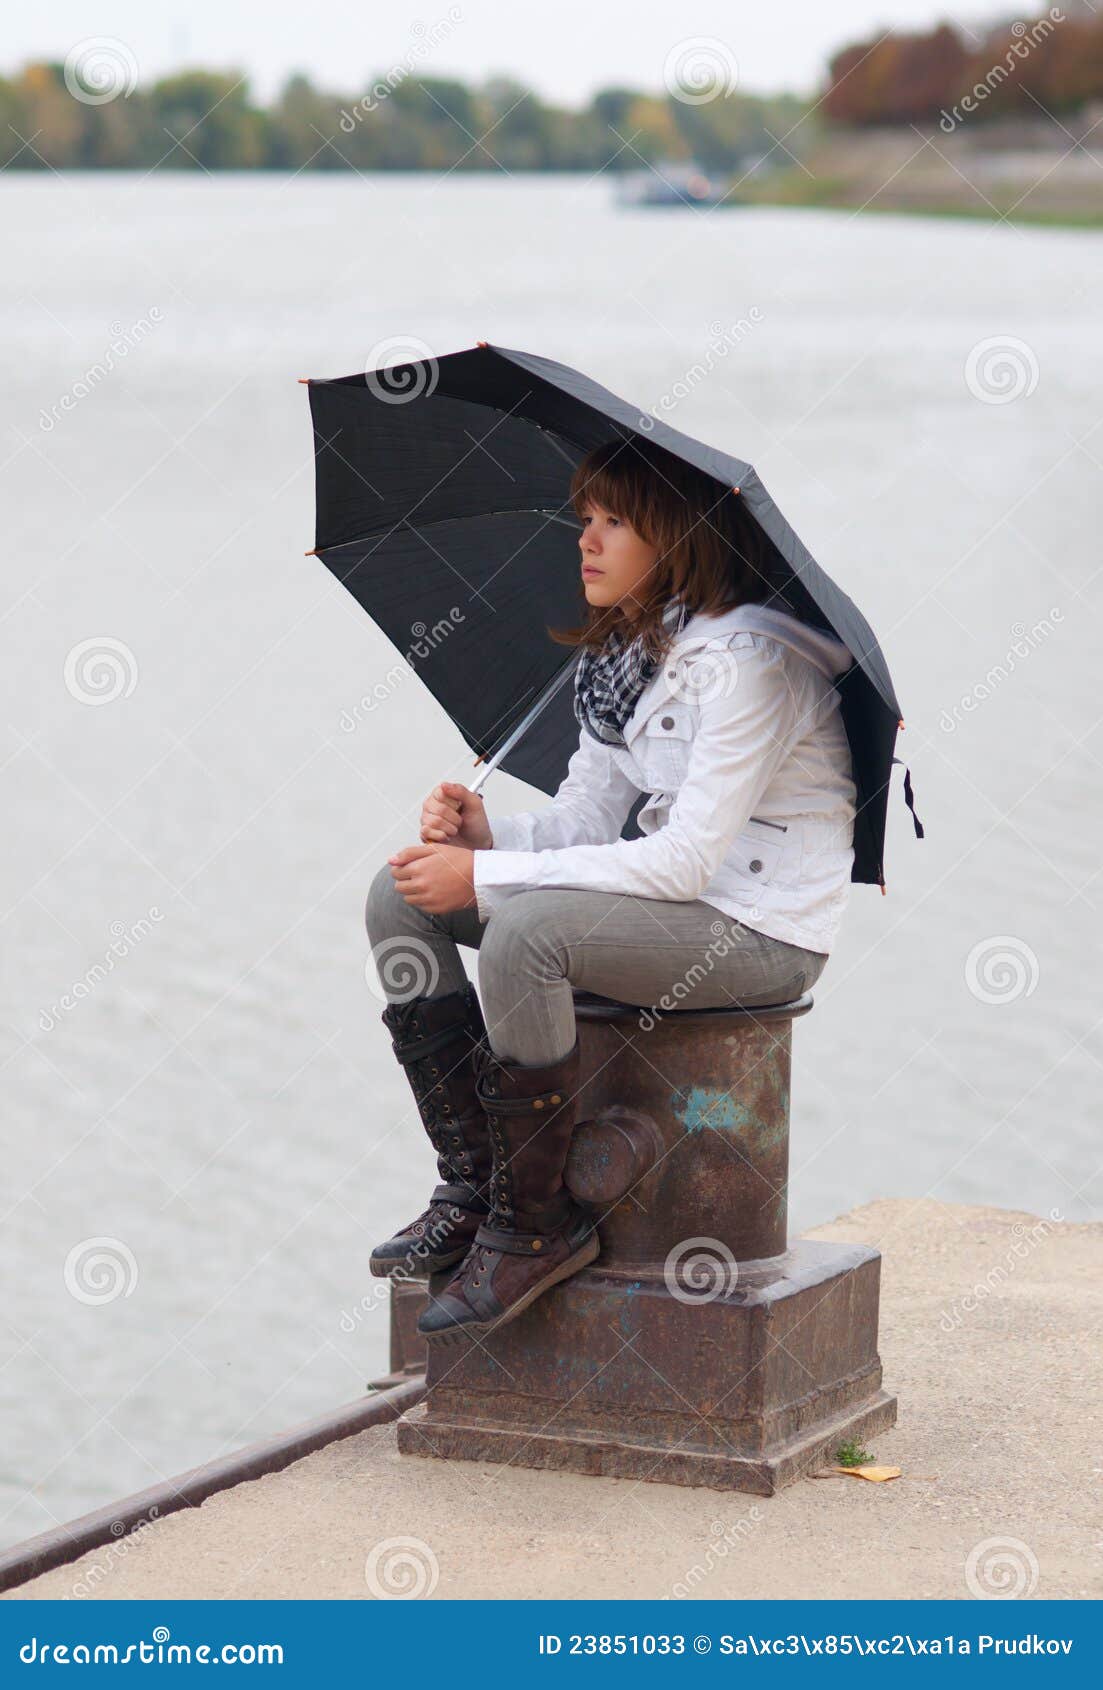 Зонтик сидит. Девушка с зонтиком сидит. Сидит с зонтом. Человек сидит под зонтом. Под зонтиком сидит девушка.